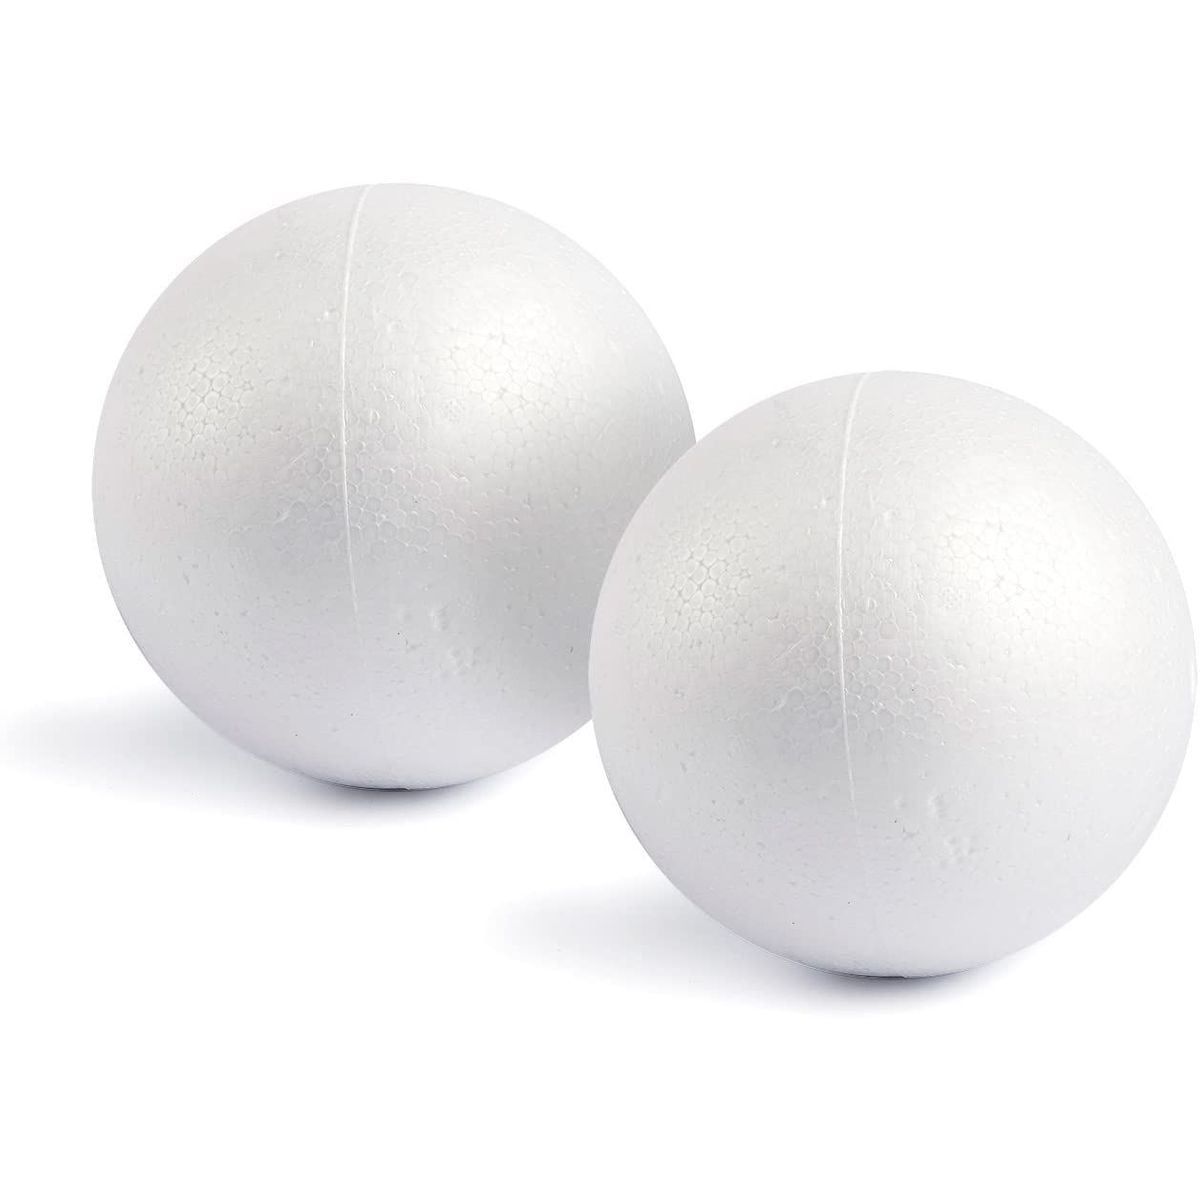 White Styrofoam Polystyrene 3D Craft Balls for Kids Art & Modelling Pack of 10 